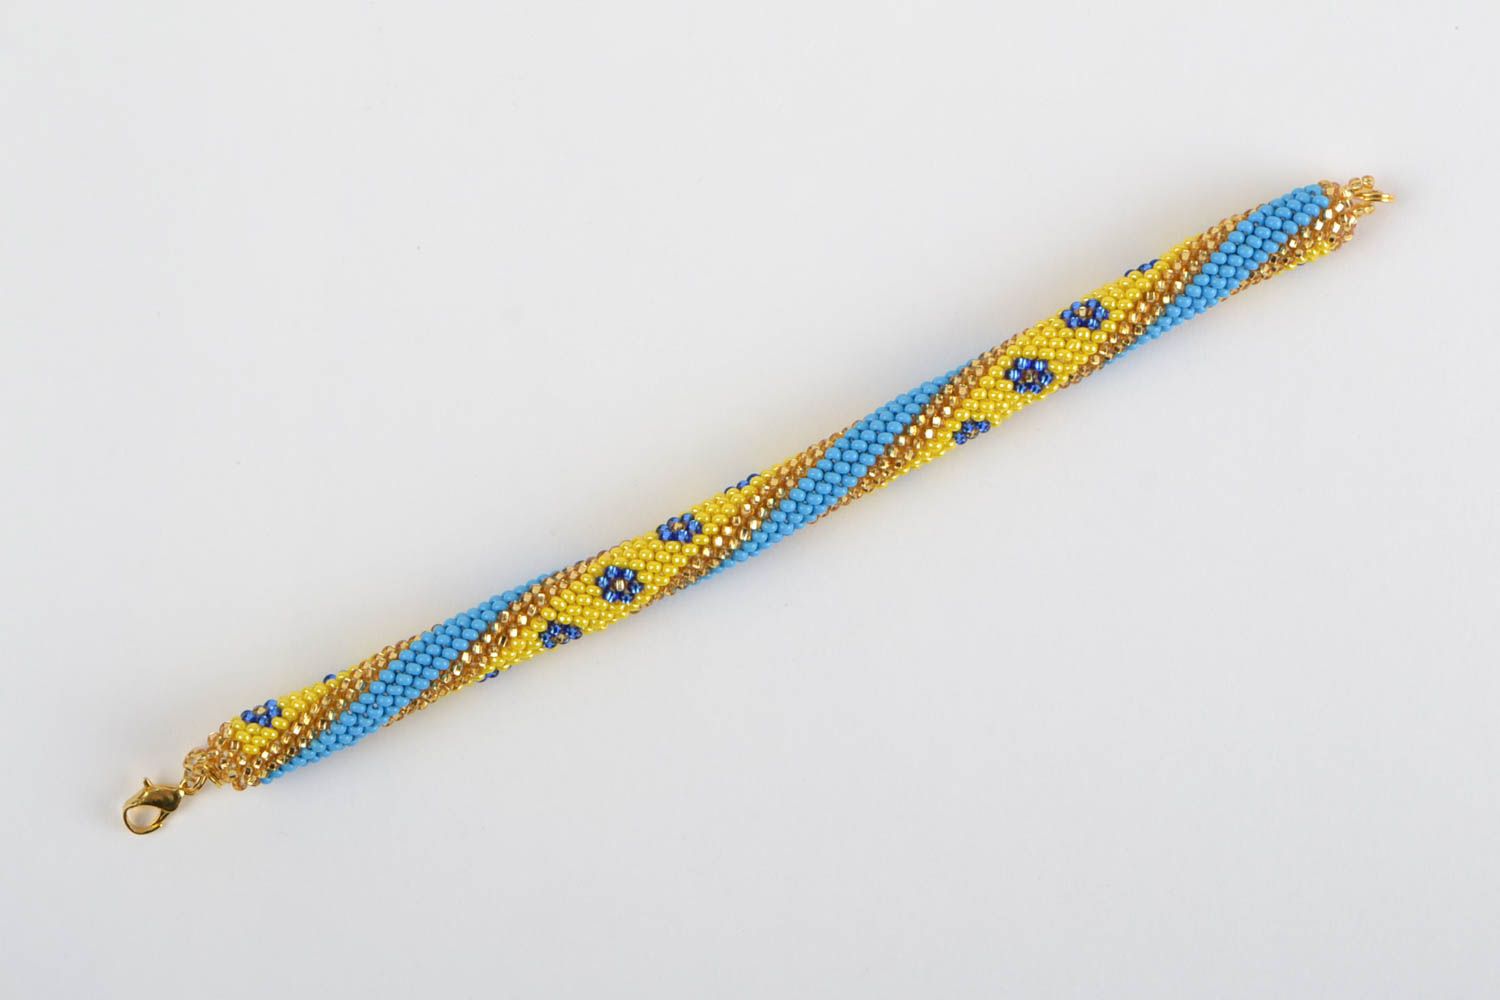 Наручный браслет из бисера ручной работы в виде жгута желтый с голубым фото 2